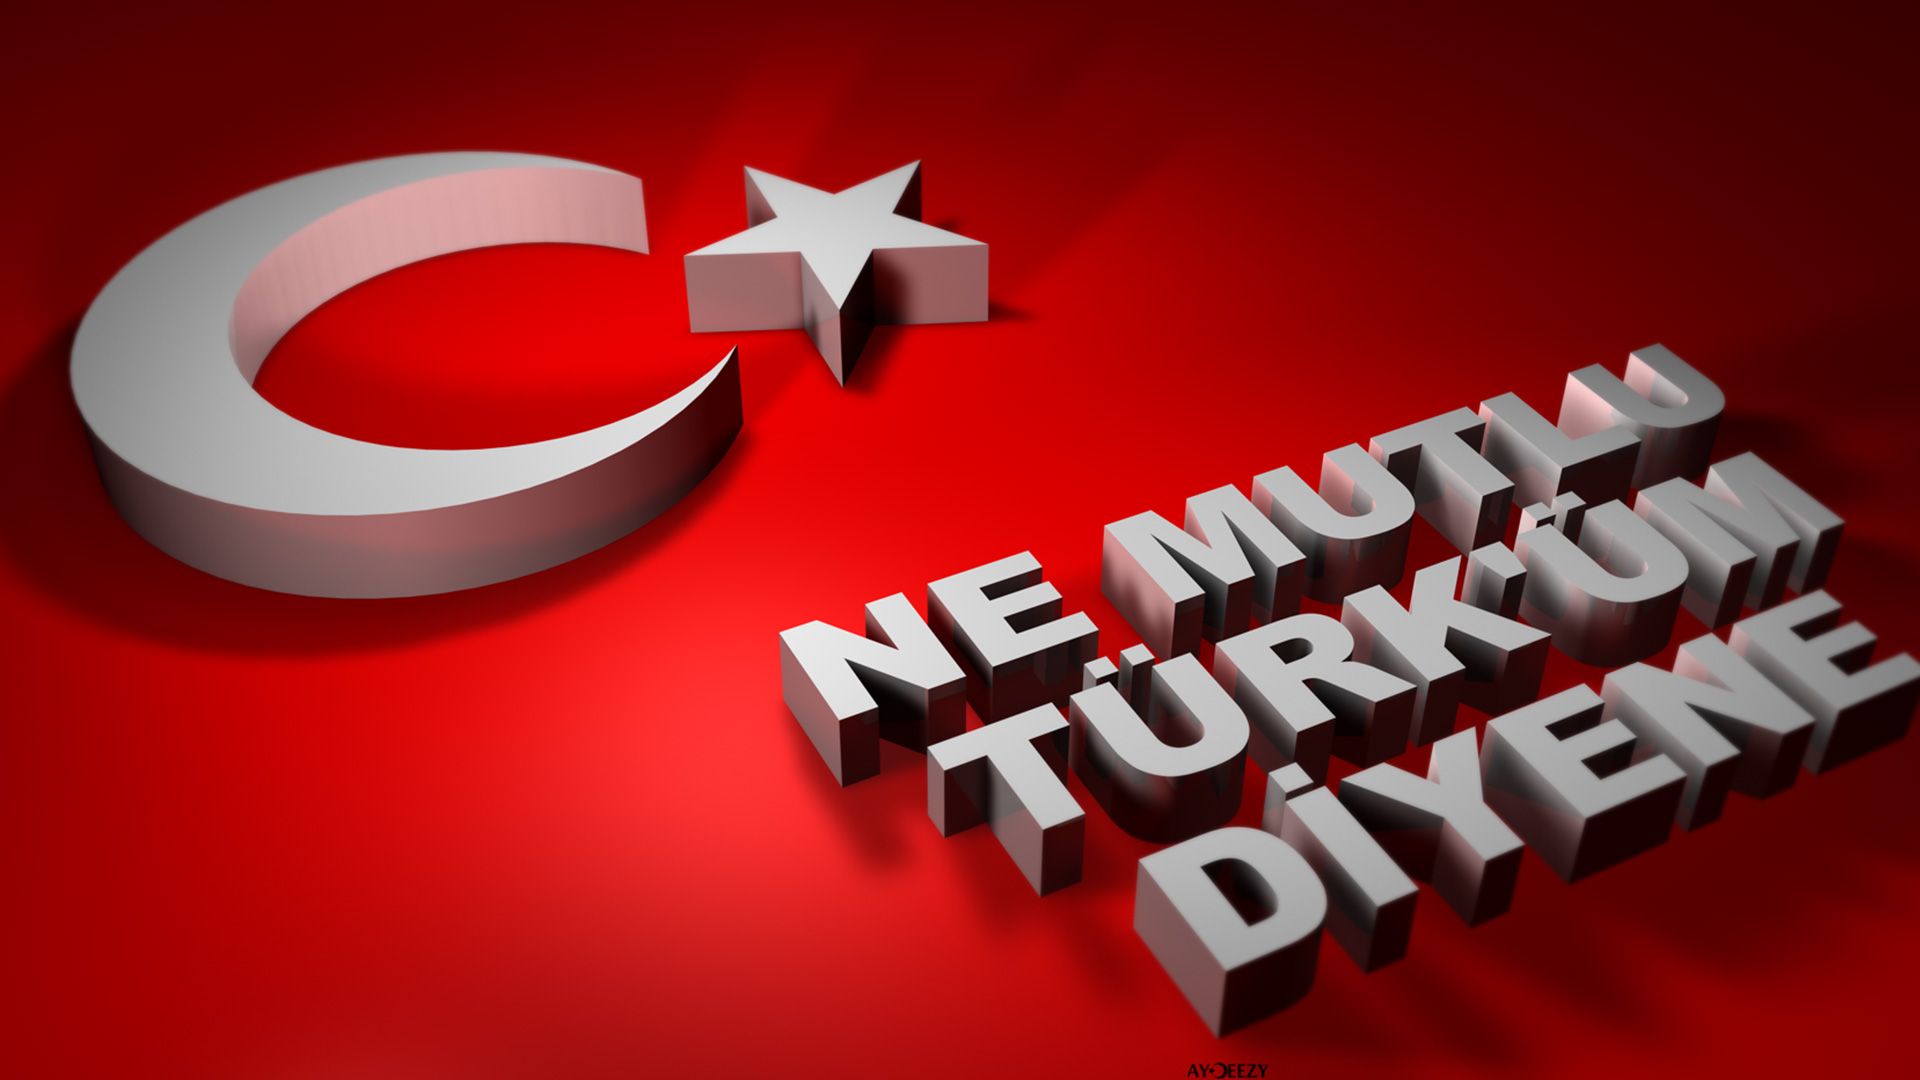 Turk bayragi resimi 9